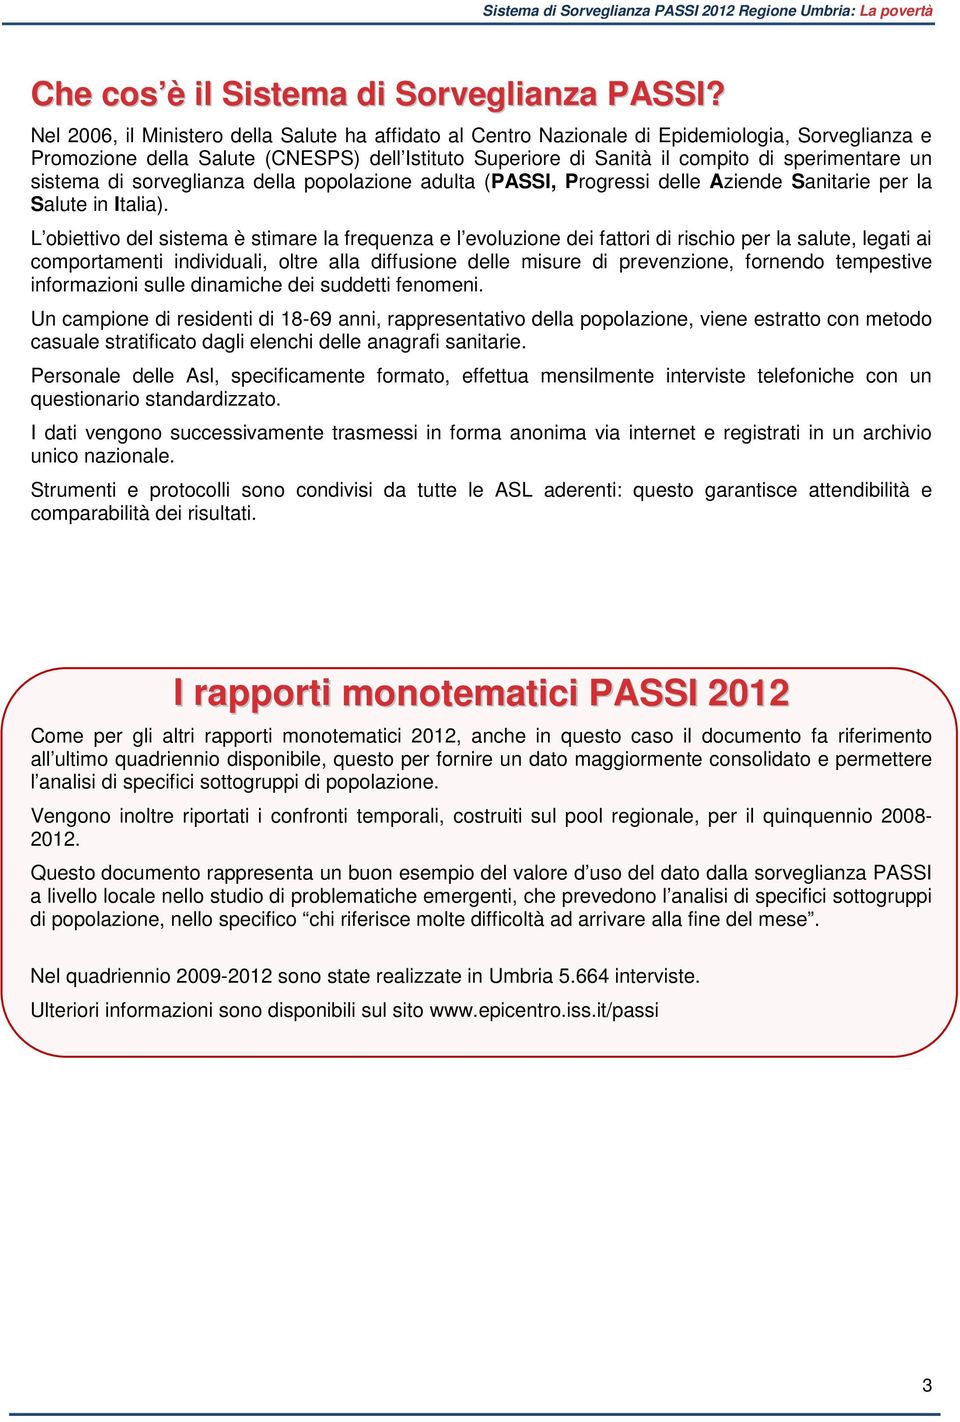 sistema di sorveglianza della popolazione adulta (PASSI, Progressi delle Aziende Sanitarie per la Salute in Italia).